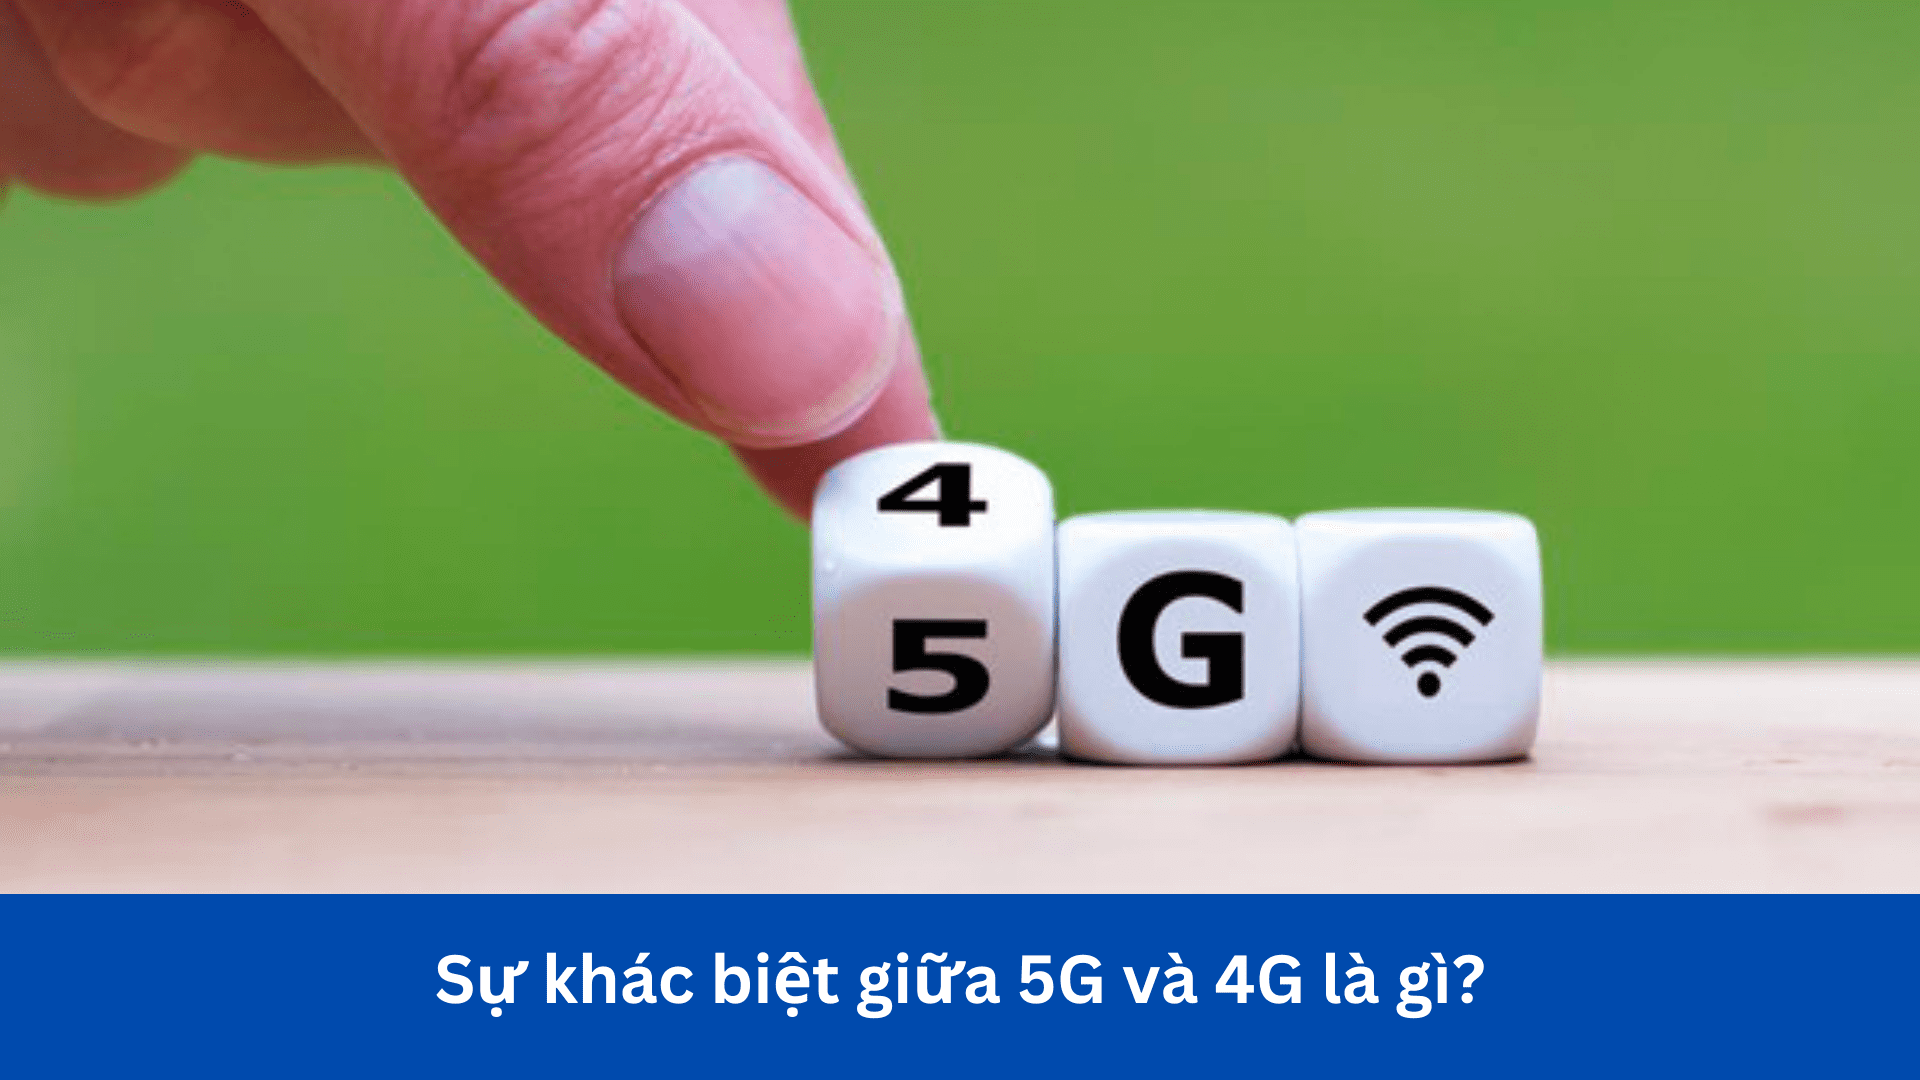 Sự khác biệt giữa 5G và 4G là gì?